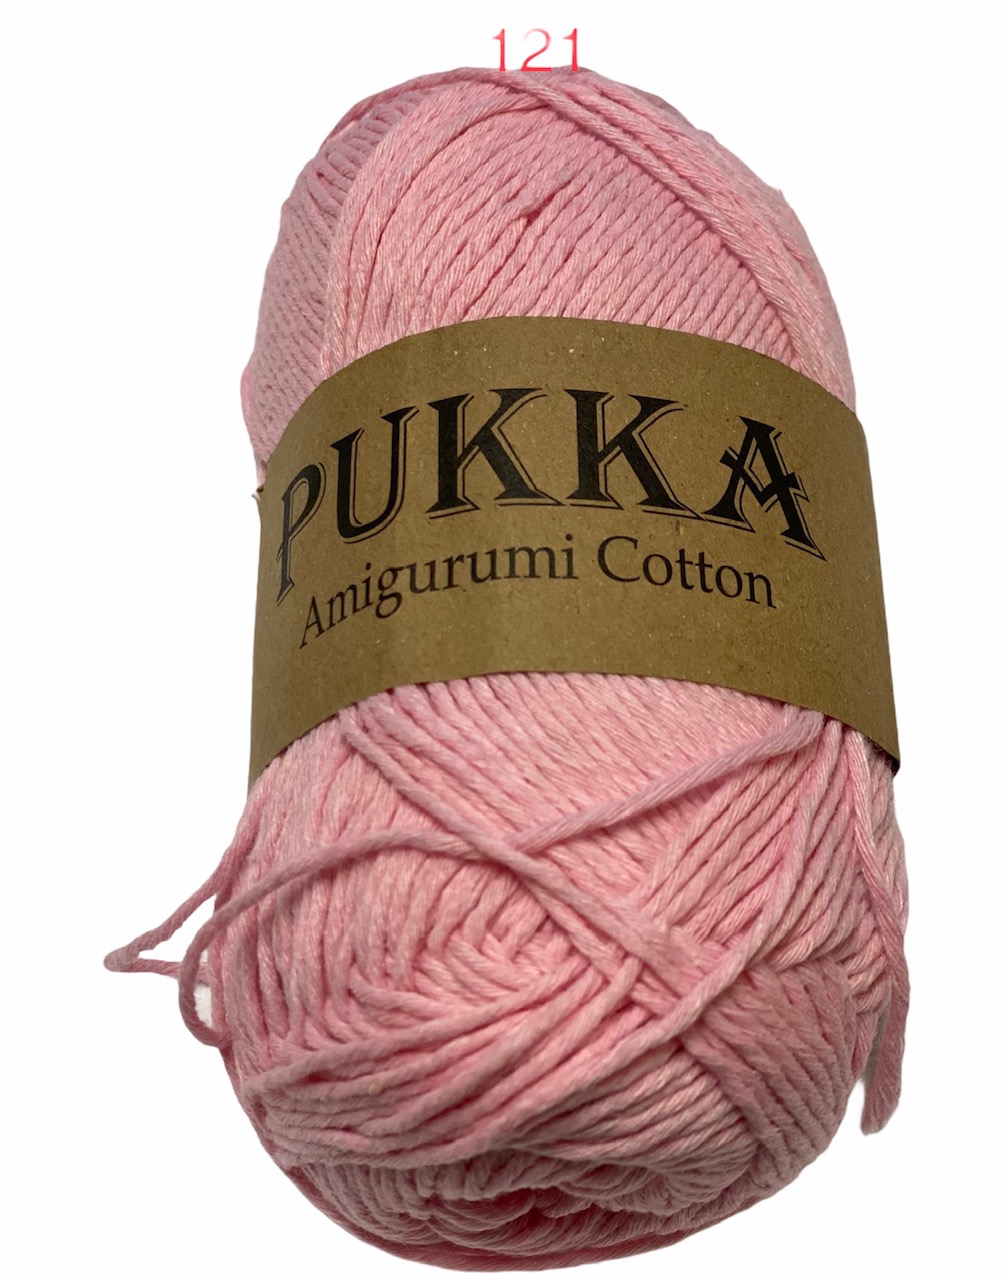 PUKKA Amigurumi Cotton 100g,121